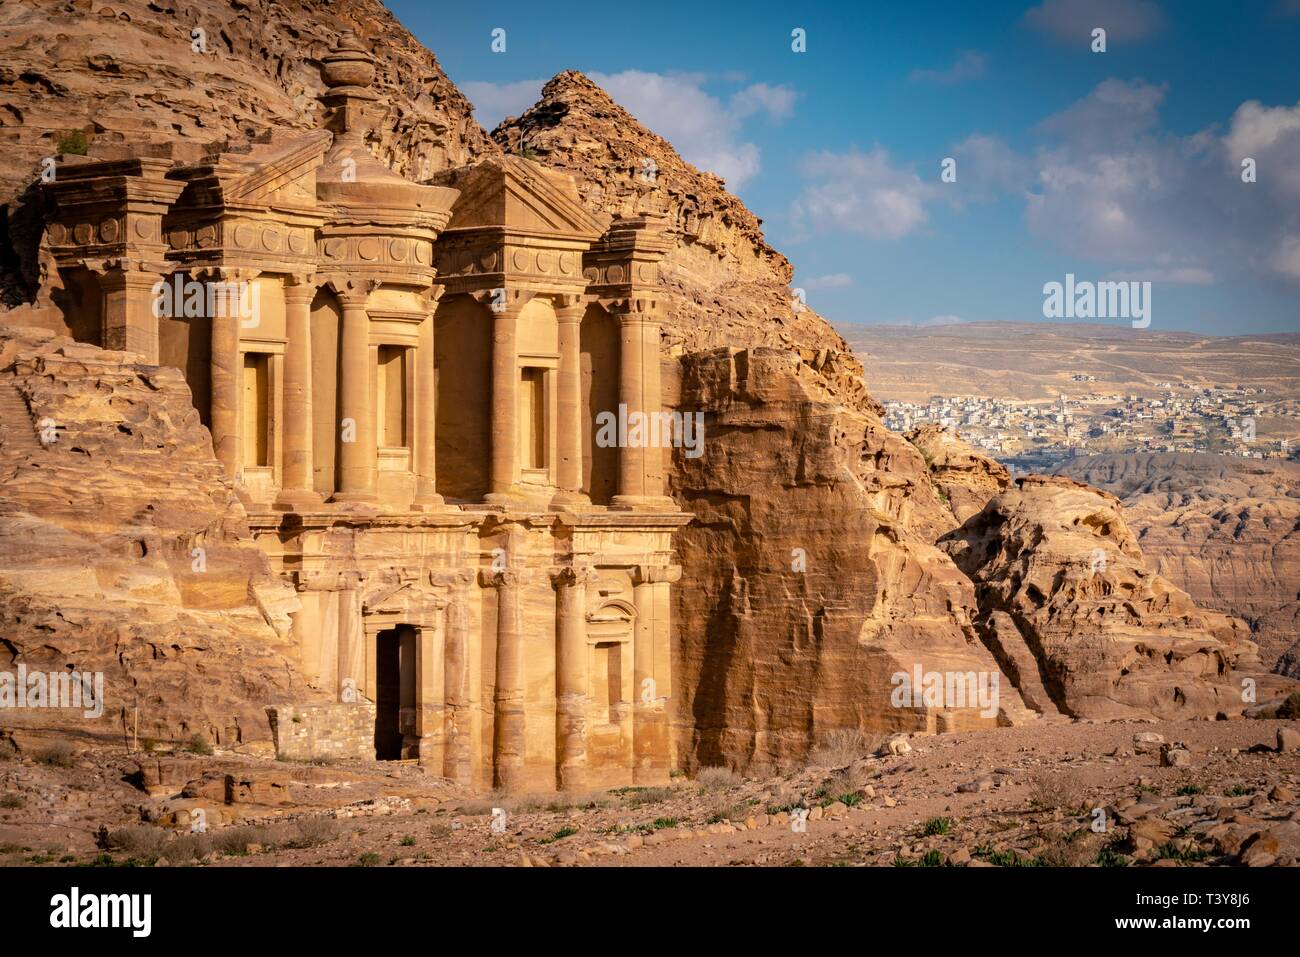 Ad Deir ("Das Kloster"; arabisch: الدير), auch als "El Deir bekannt, ist eine monumentale Gebäude geschnitzt aus Stein in der antiken jordanischen Felsenstadt Petra. Stockfoto